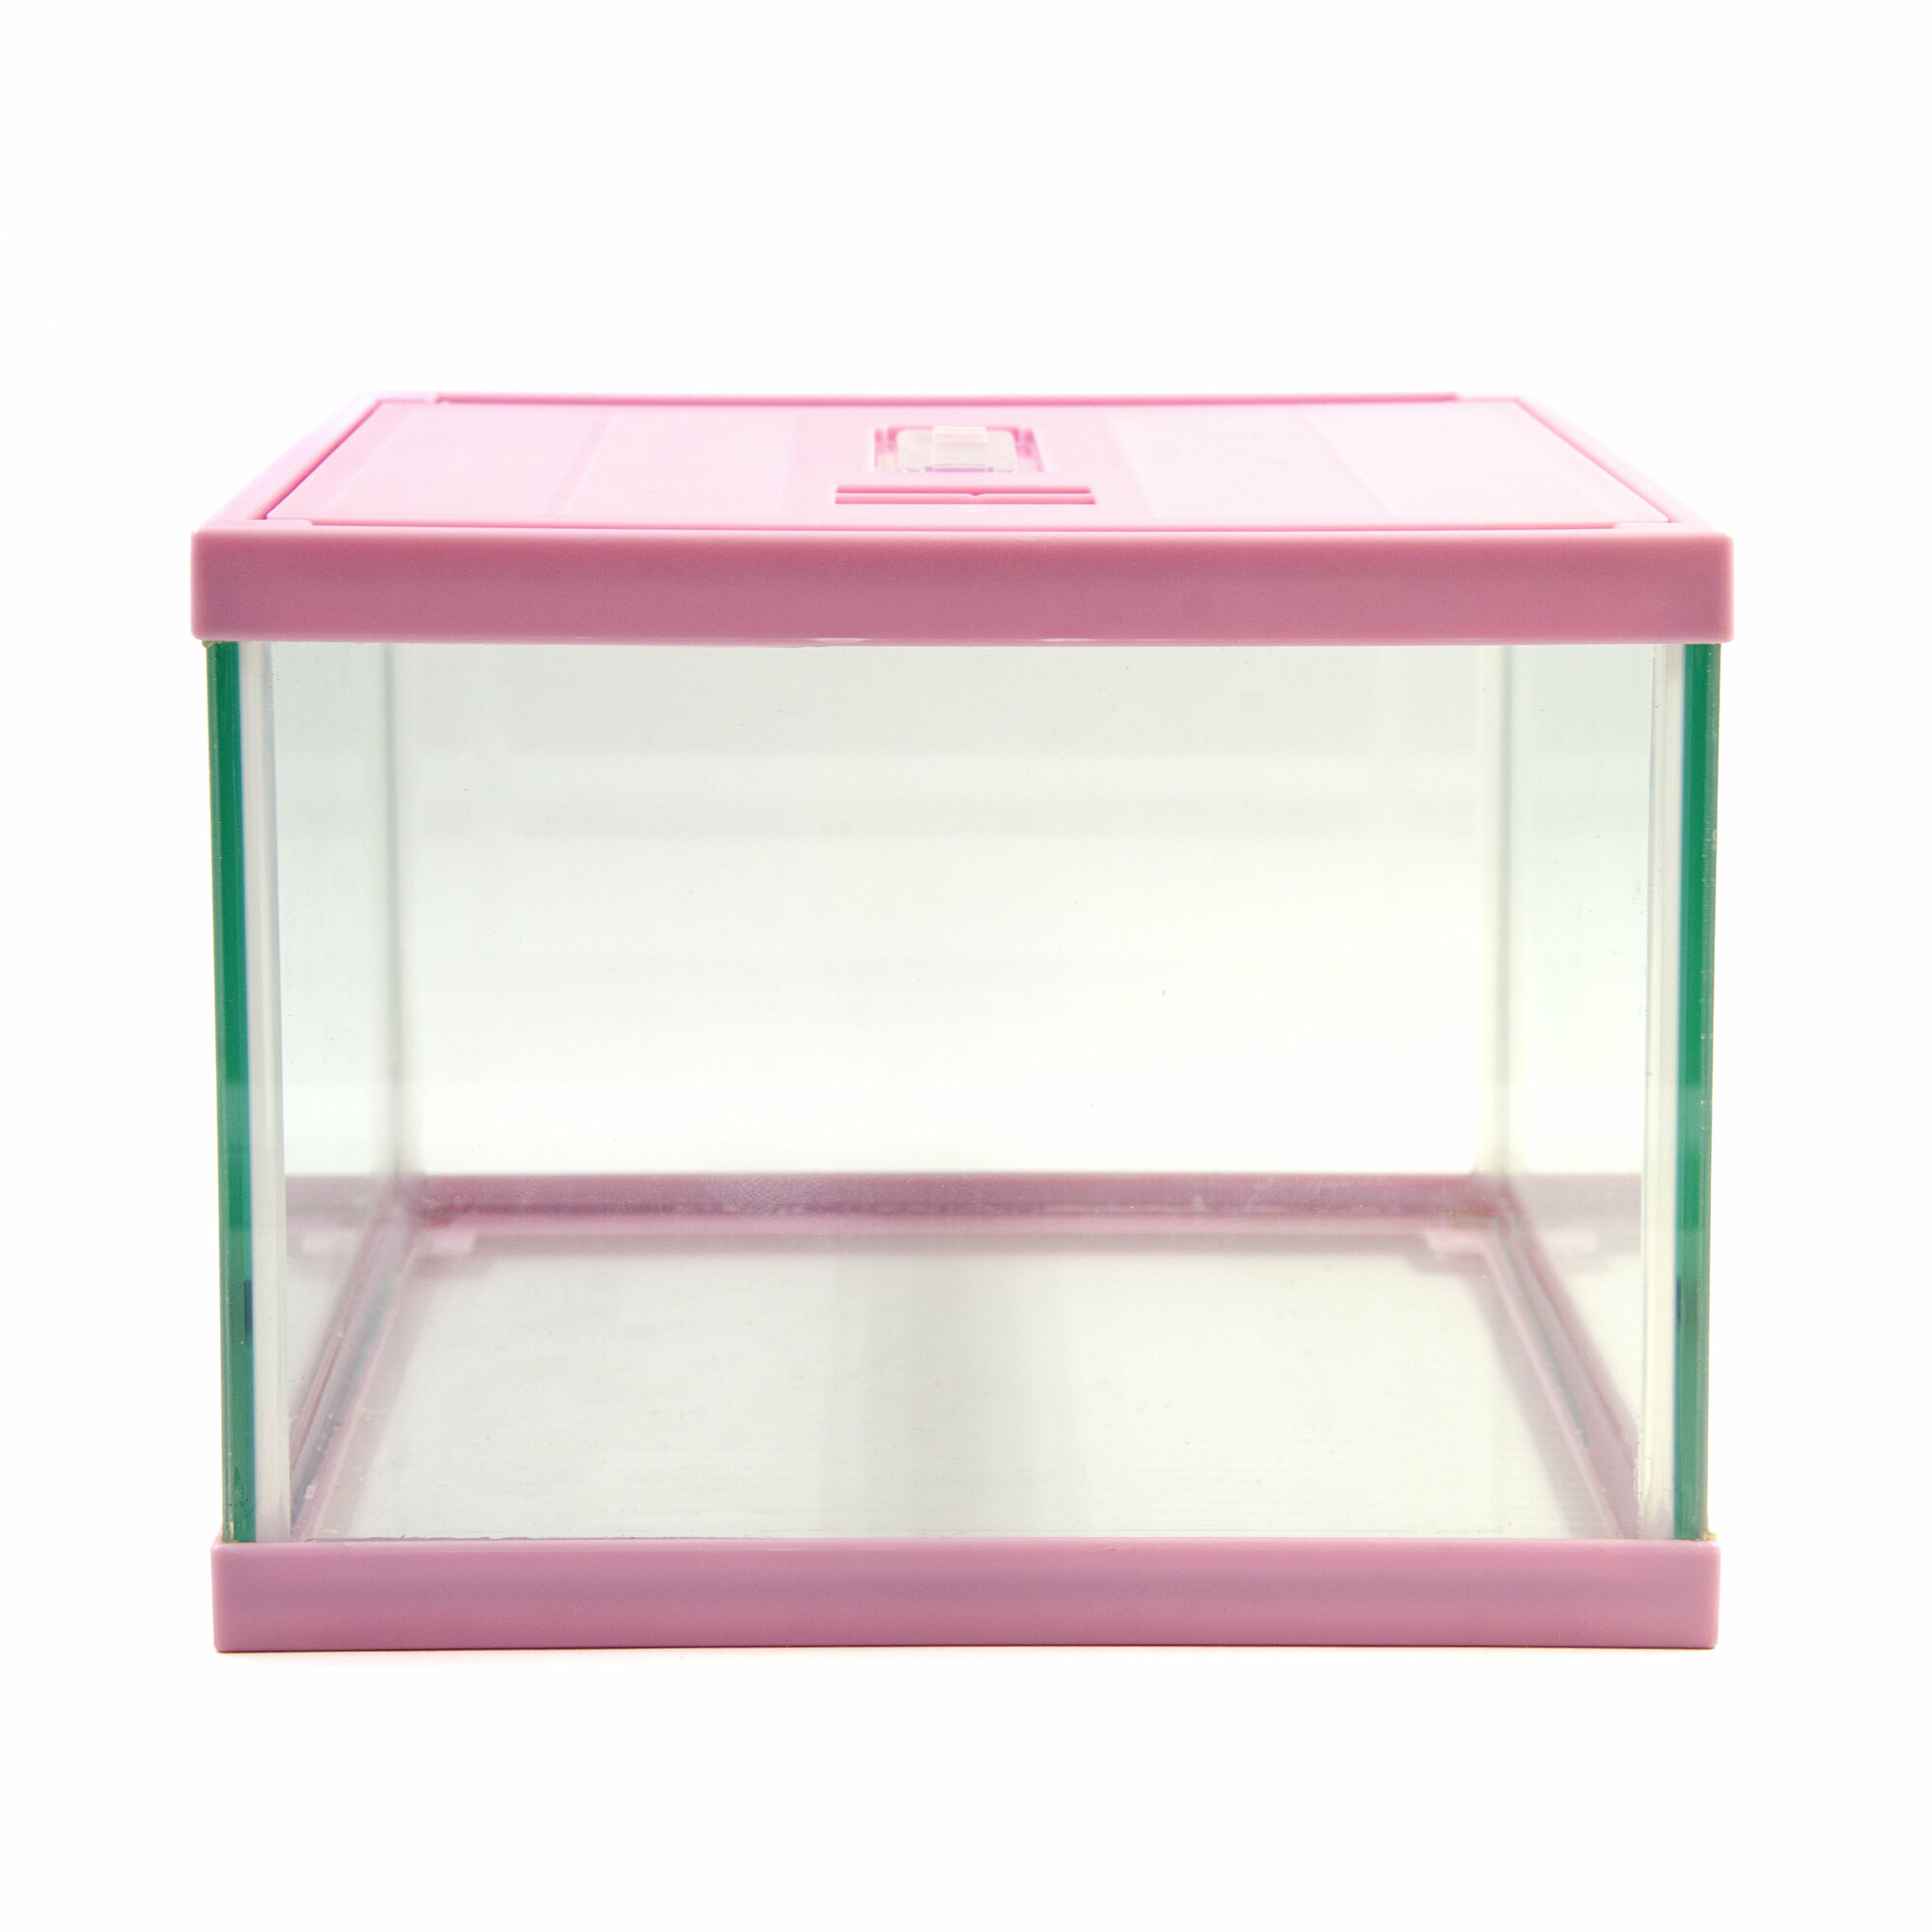 Террариум стеклянный с верхней крышкой MCLANZOO , розовый, 20х20хН15см